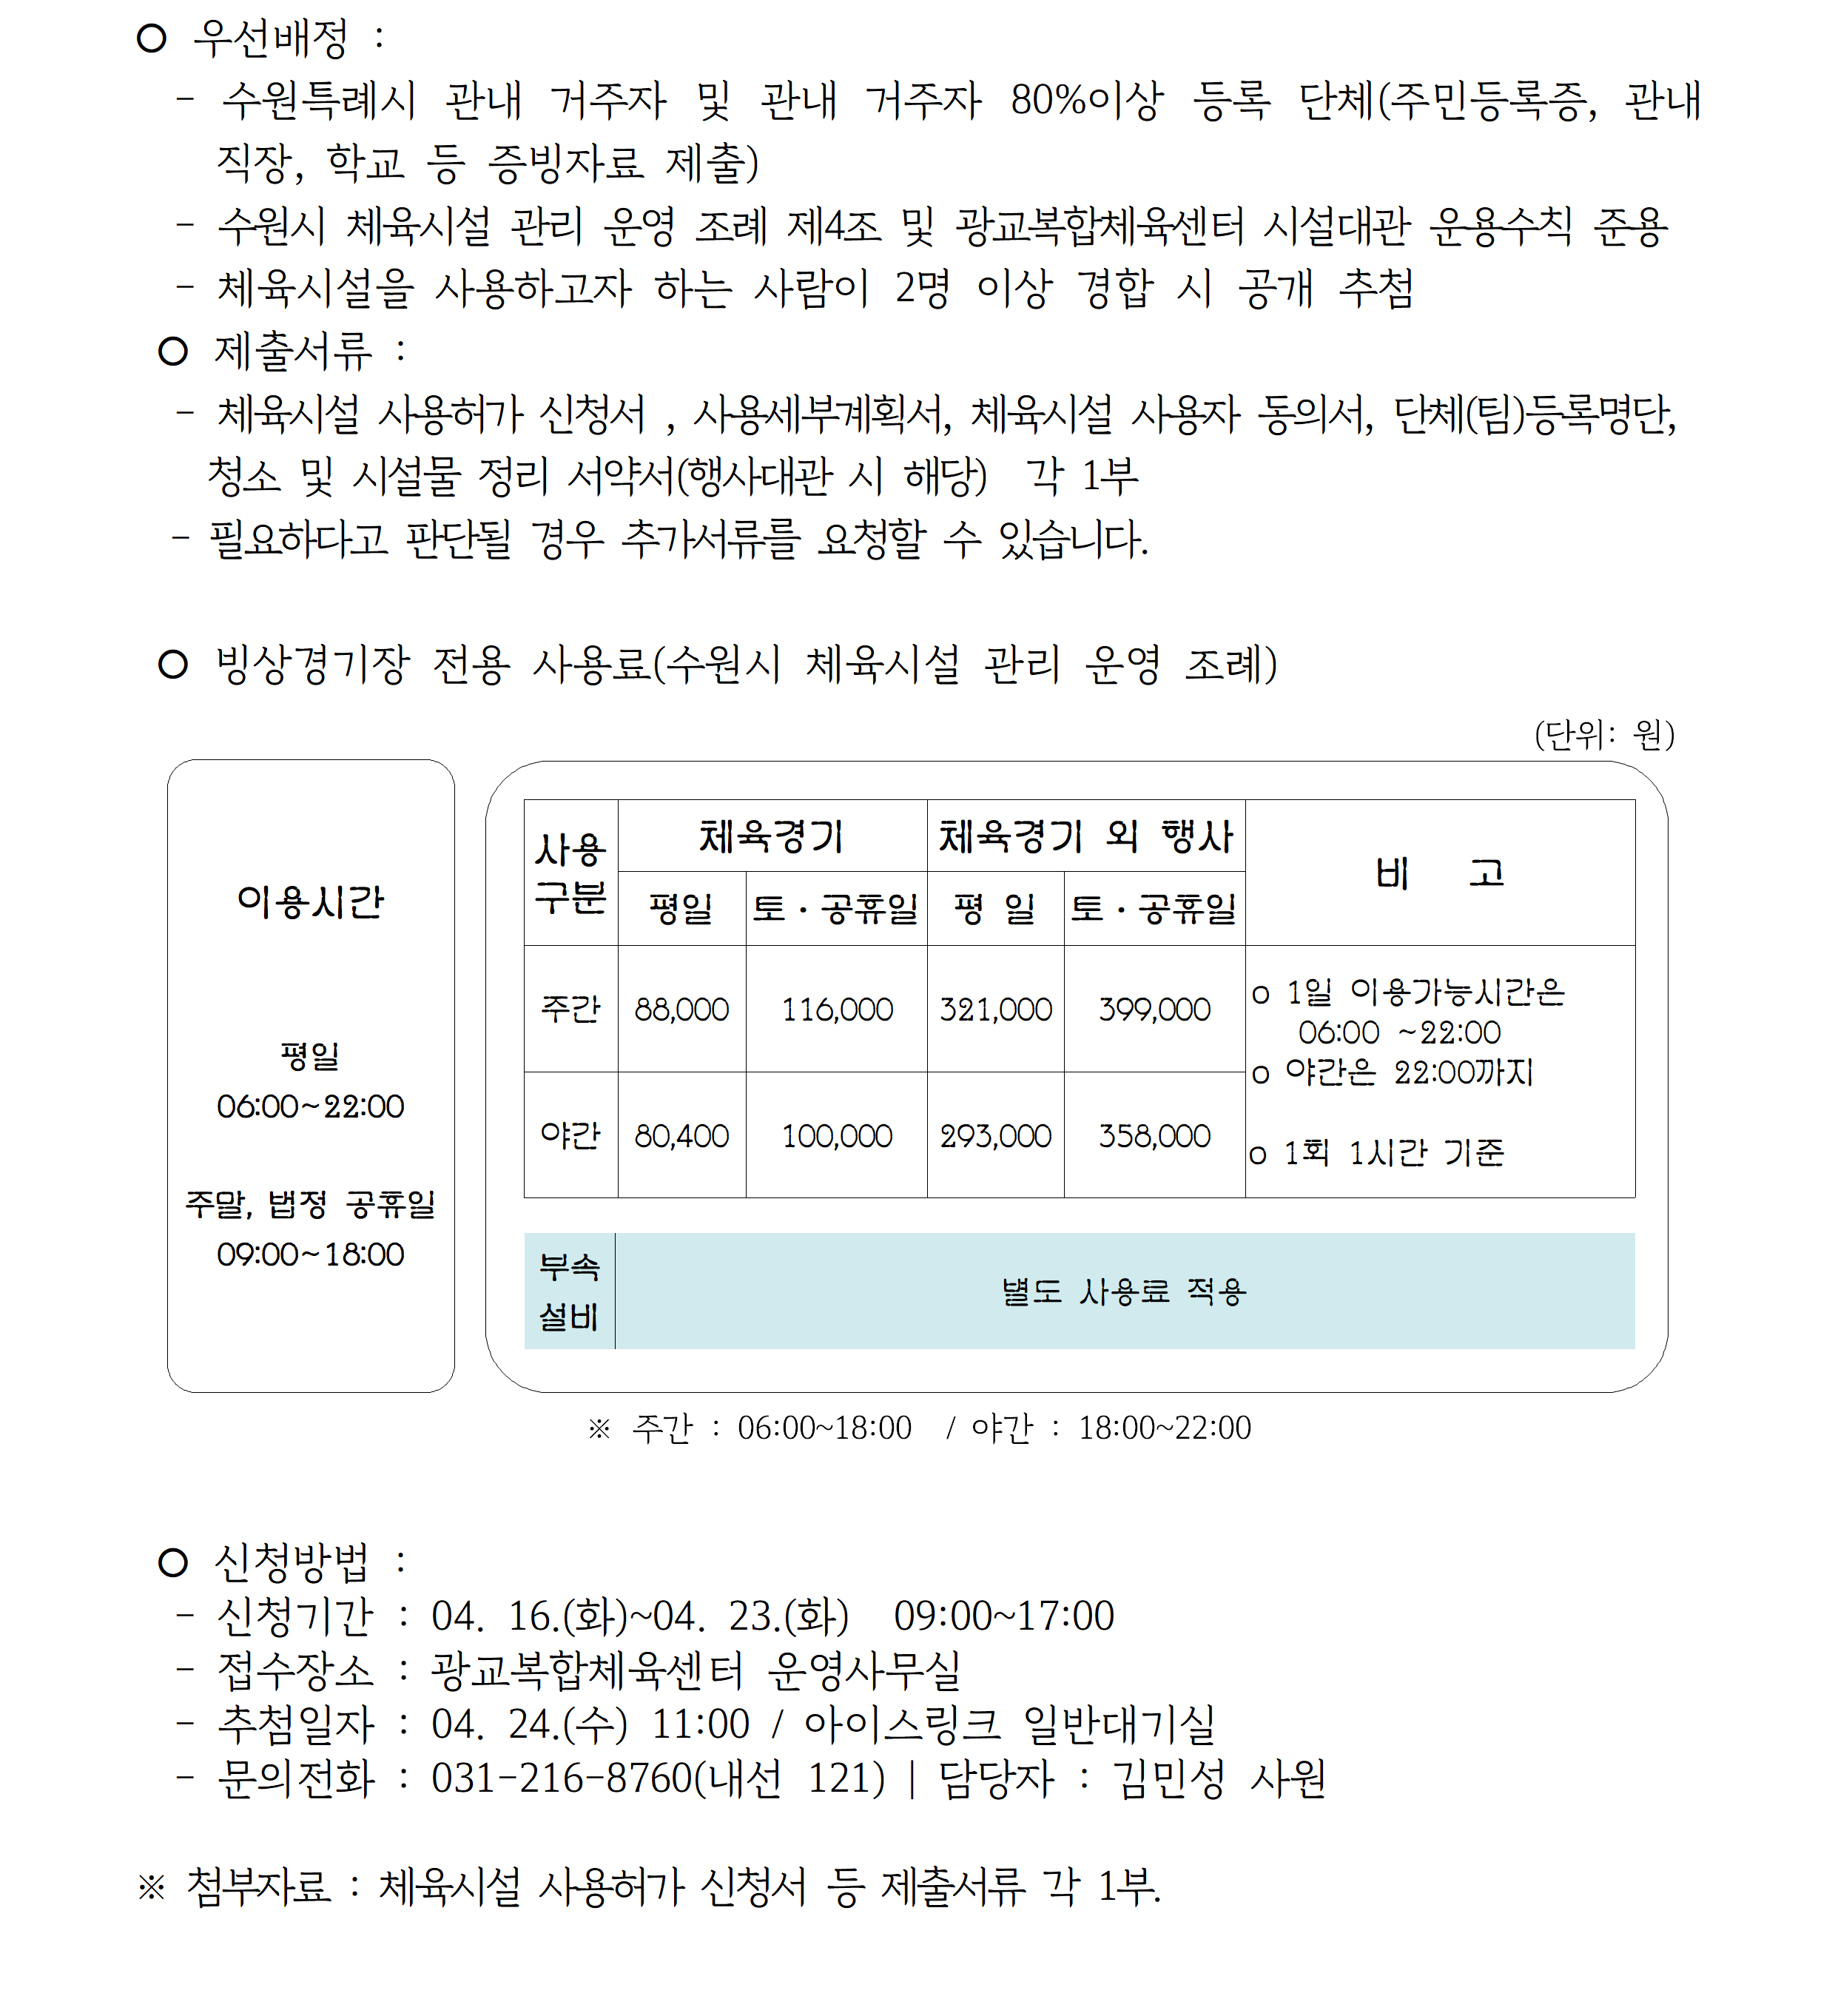 ('24.05.) 아이스링크 임시대관_공지사항(공지용)002.png